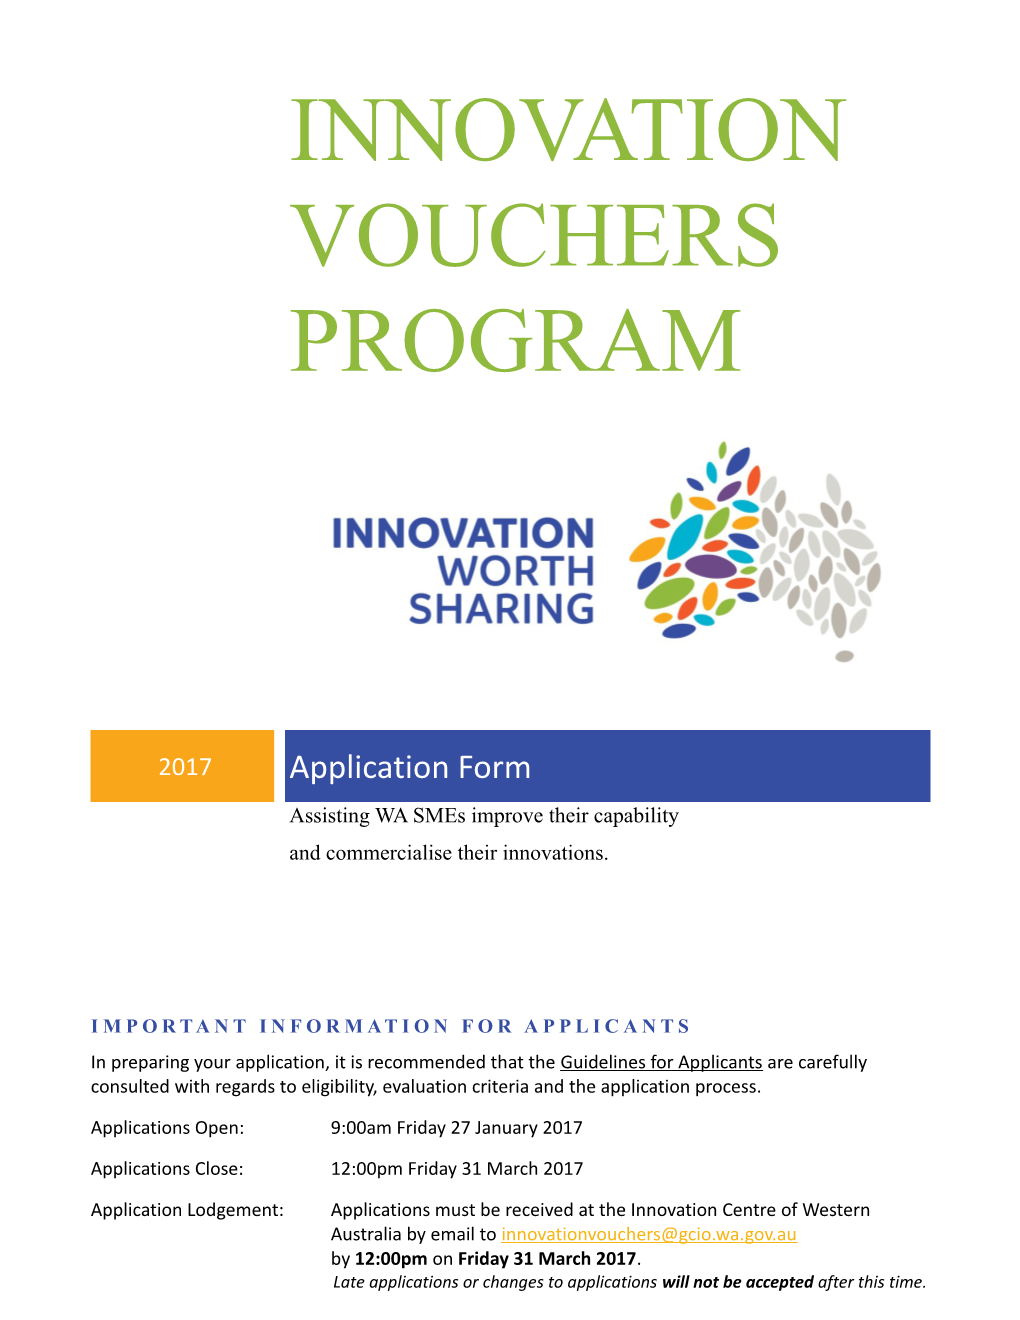 Innovation Vouchers Program